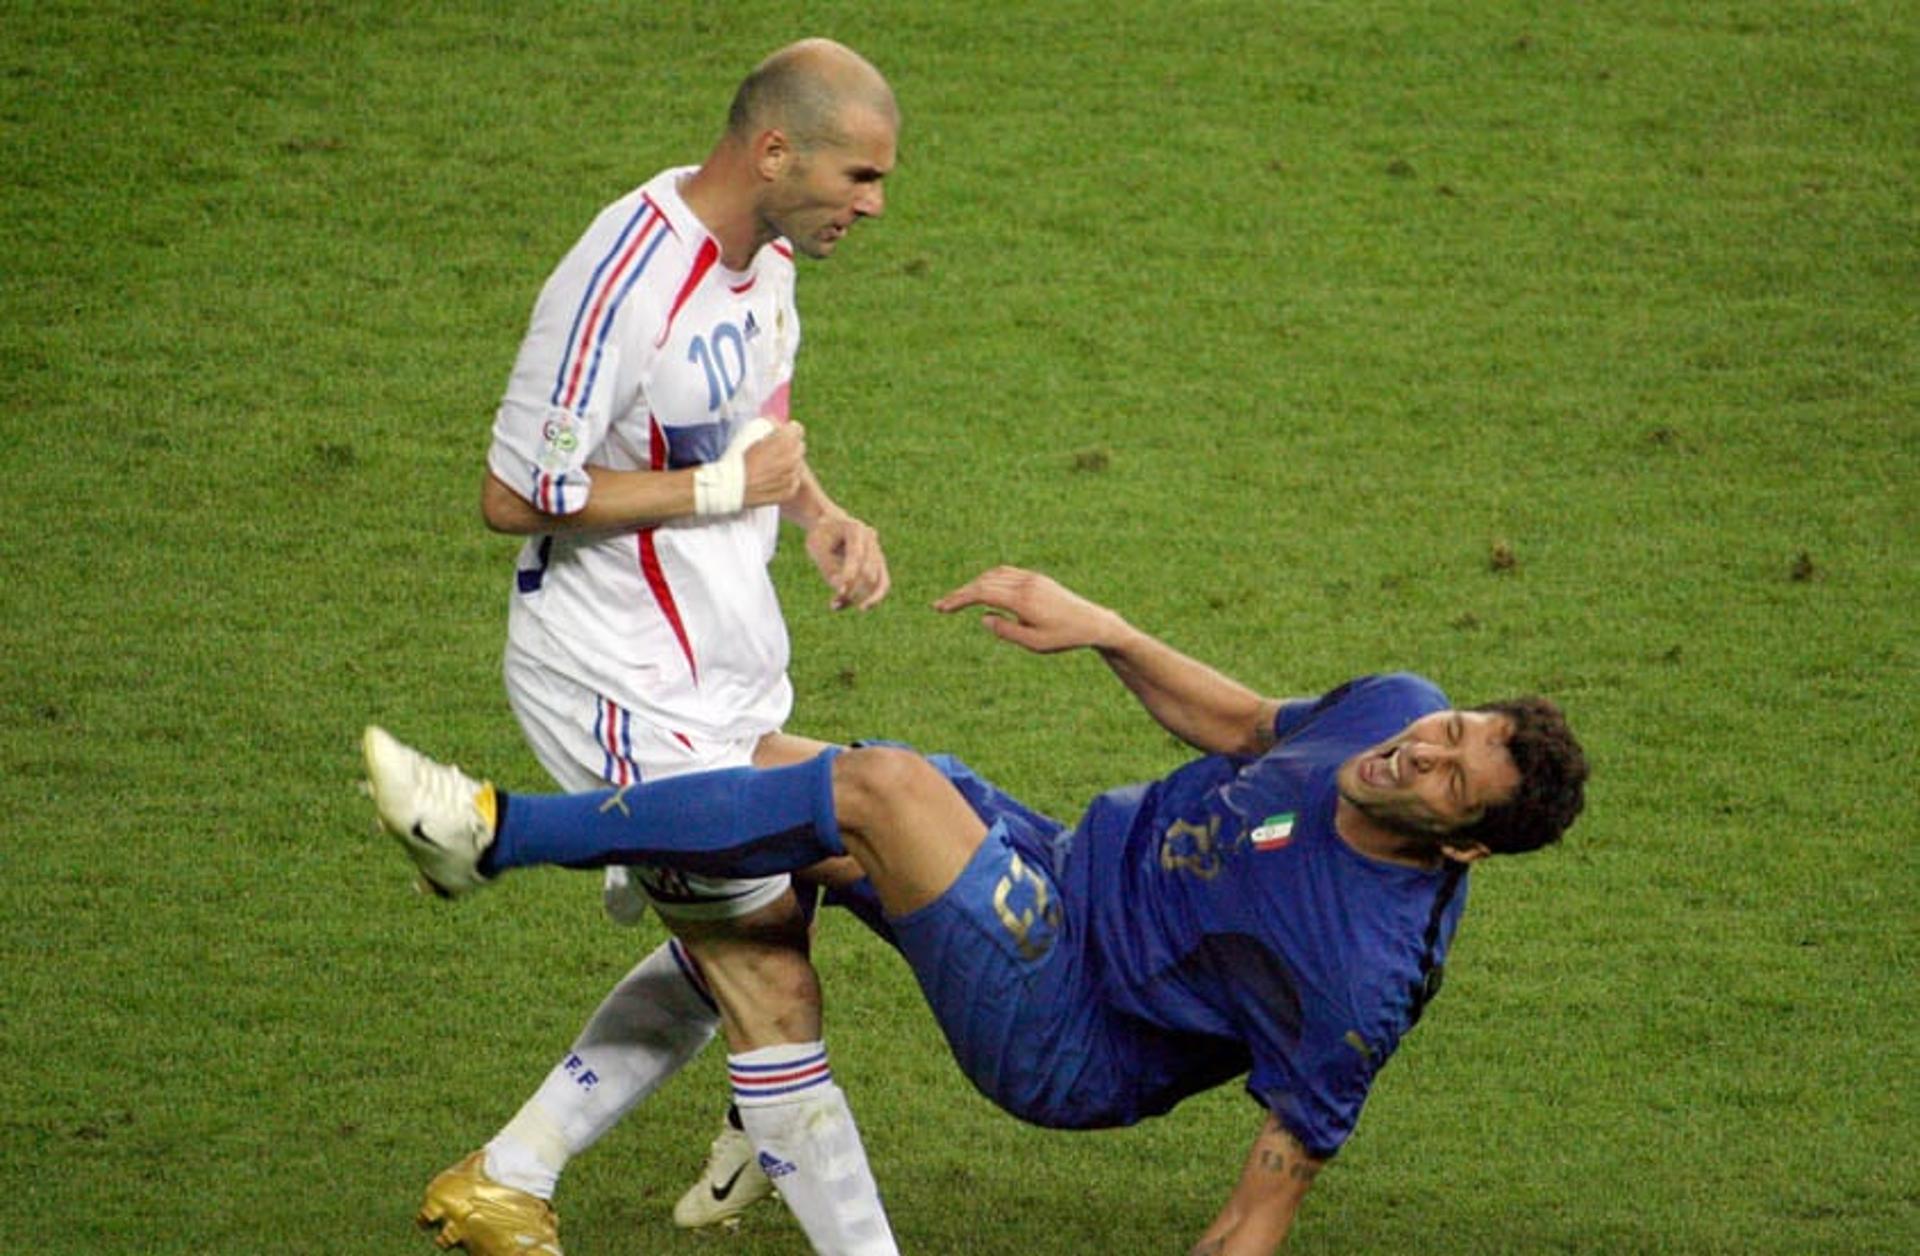 Zidane na seleção francesa (Copa de 2006) - Cabeçada